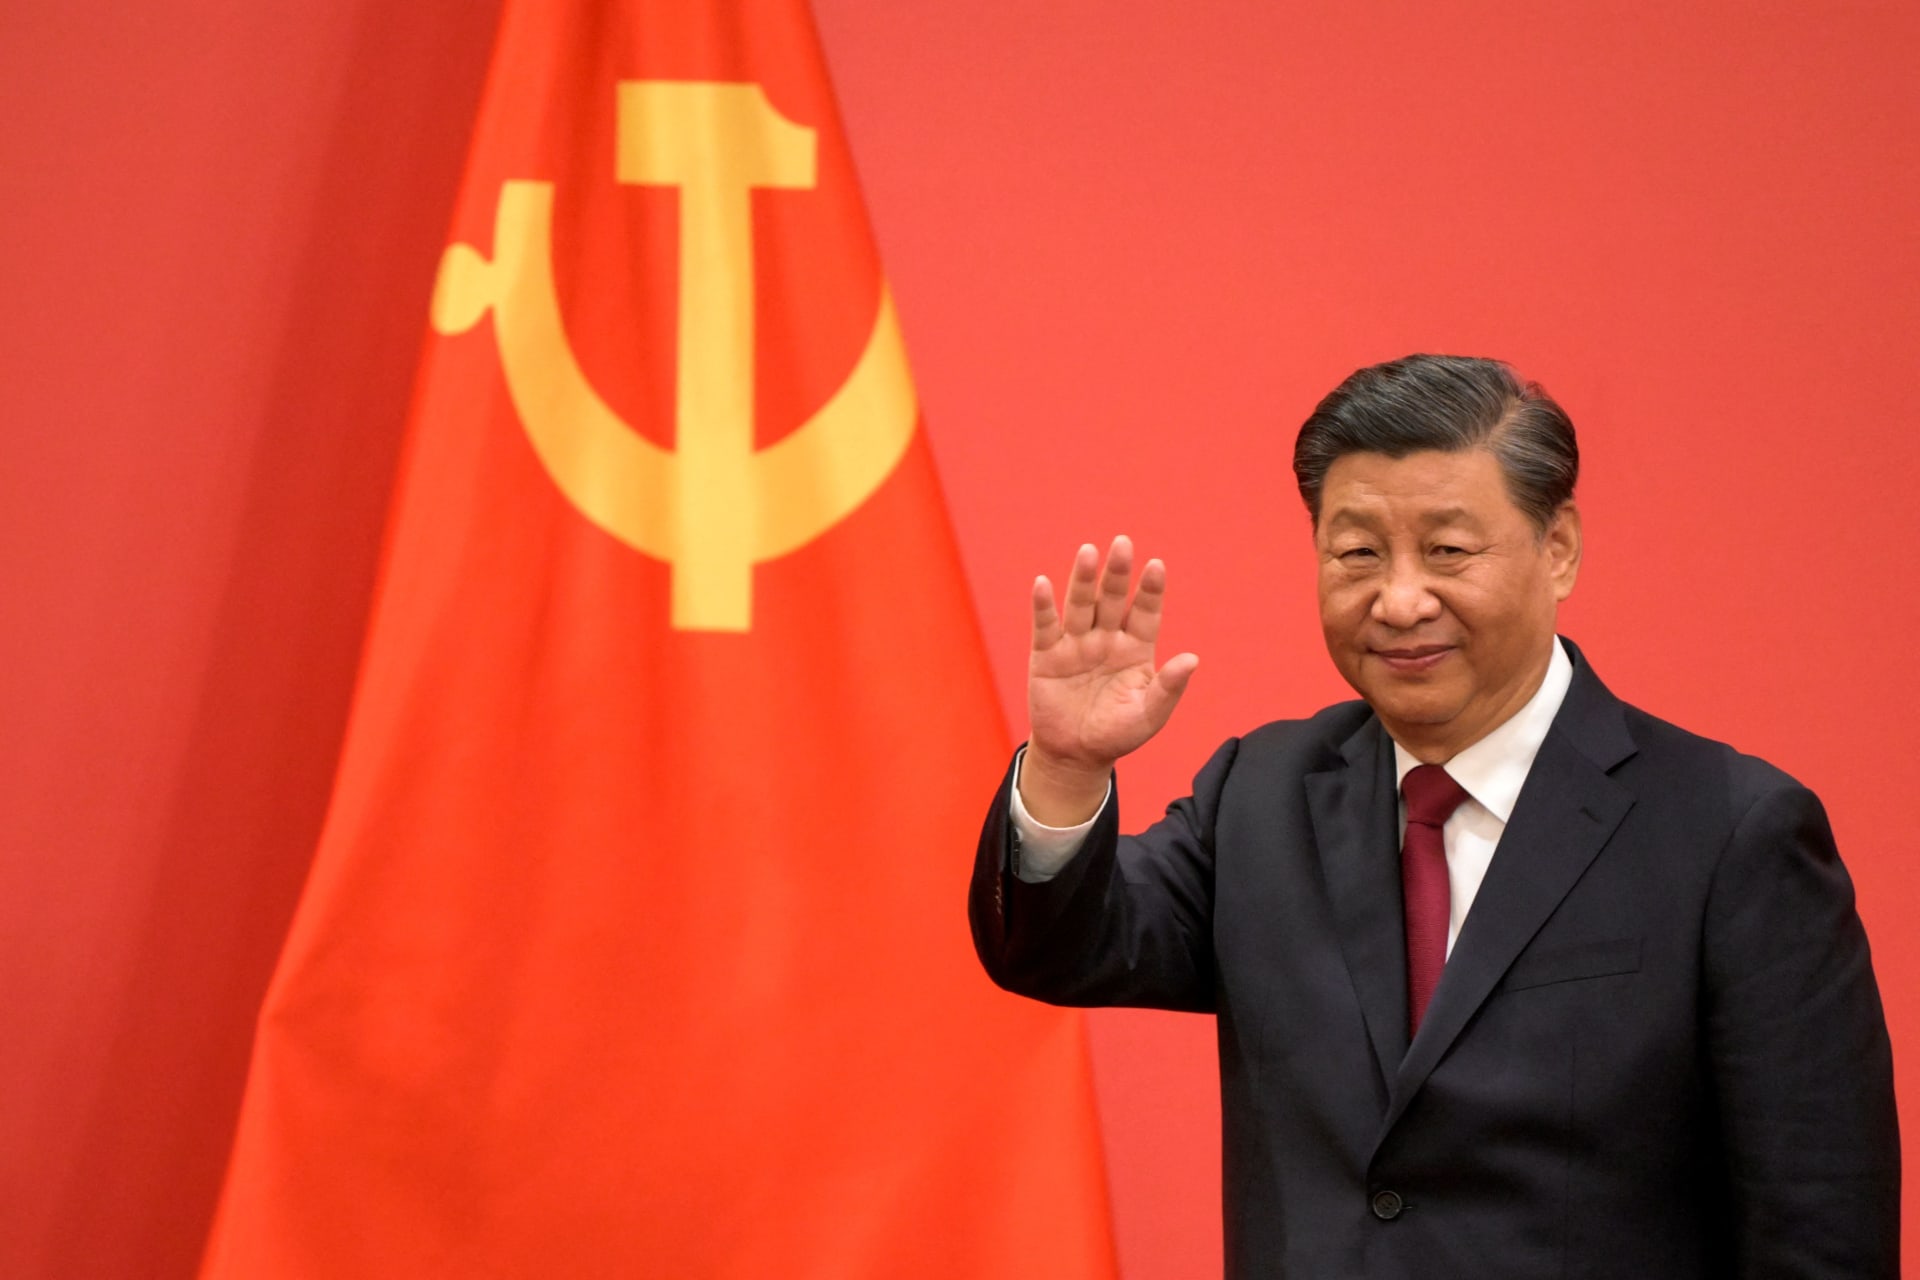 الرئيس الصيني: هولندا "بوابة" حقيقية للتعاون مع الاتحاد الأوروبي